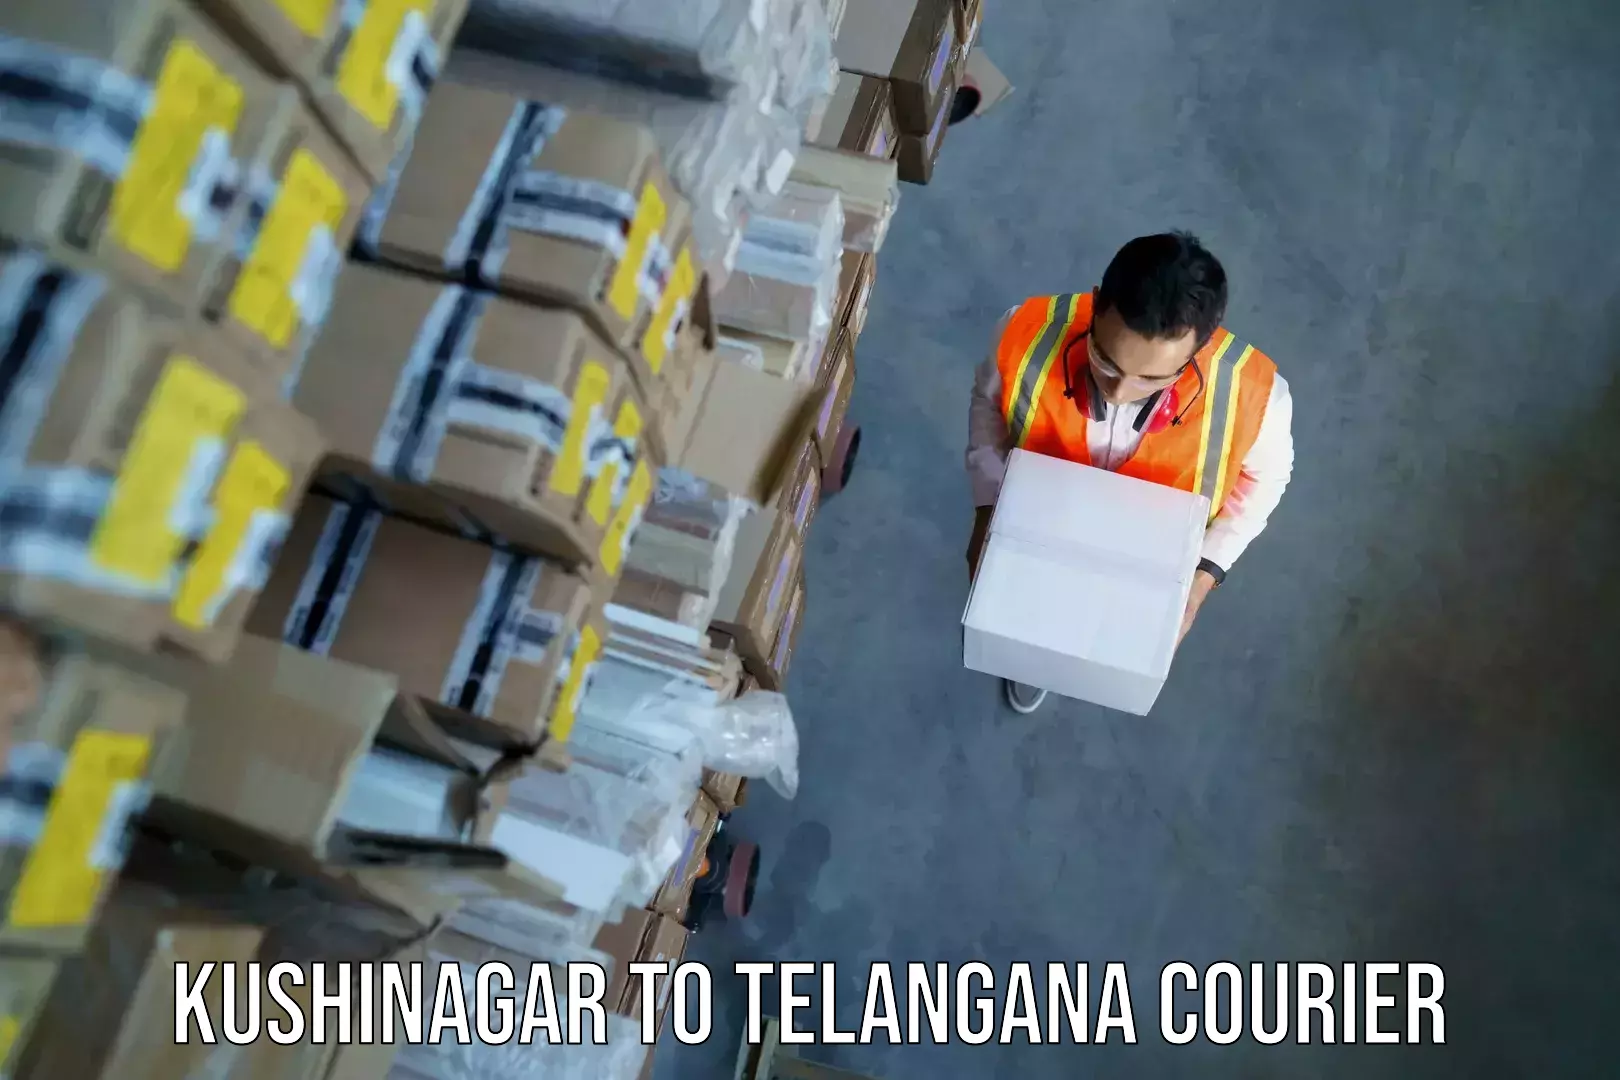 Baggage shipping schedule Kushinagar to Karimnagar